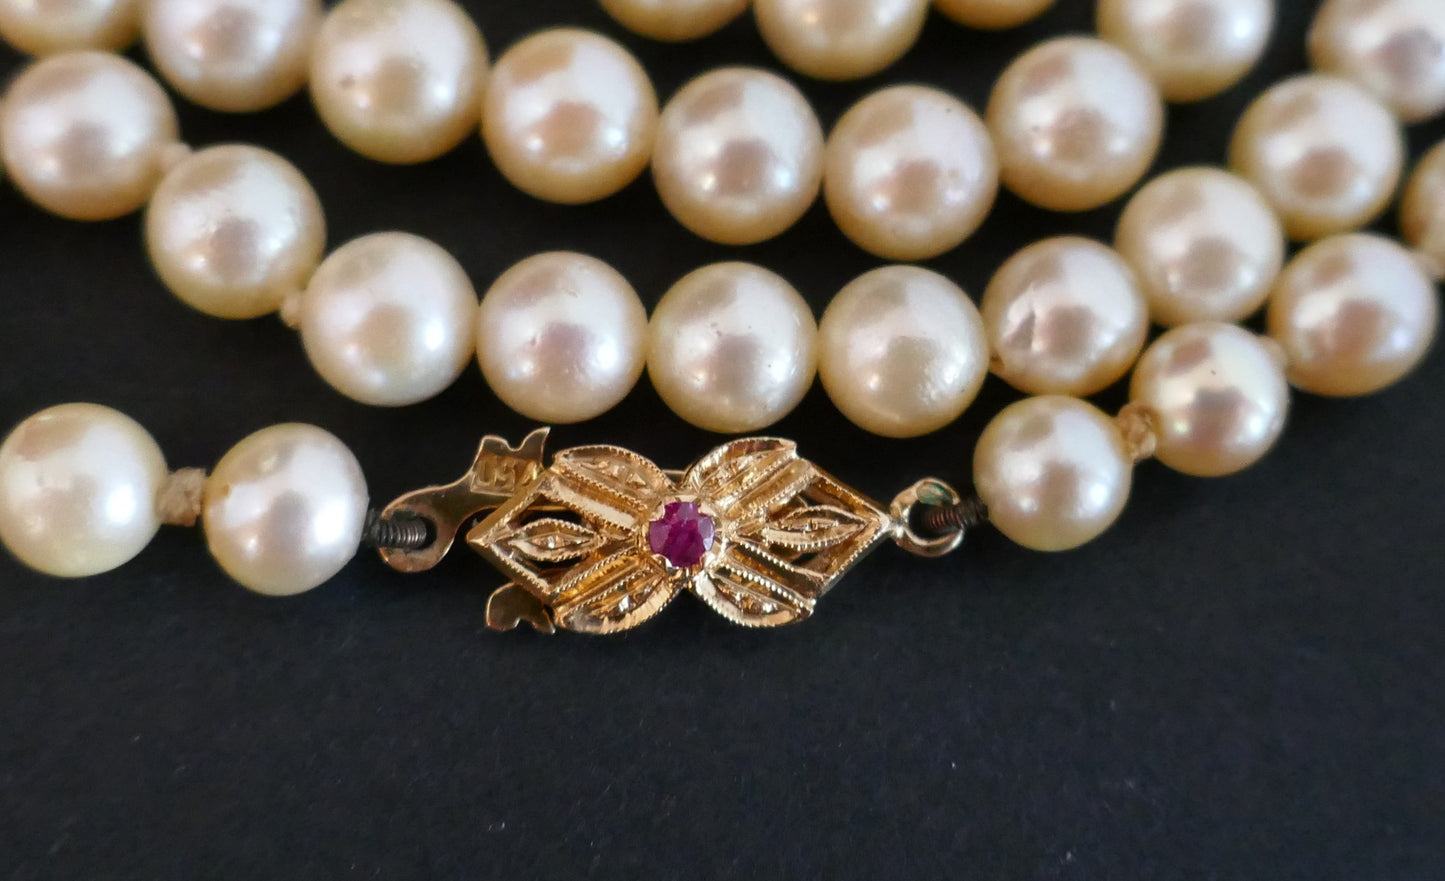 Collier de Perles De Culture, Fermoir Or Jaune et rubis synthèse